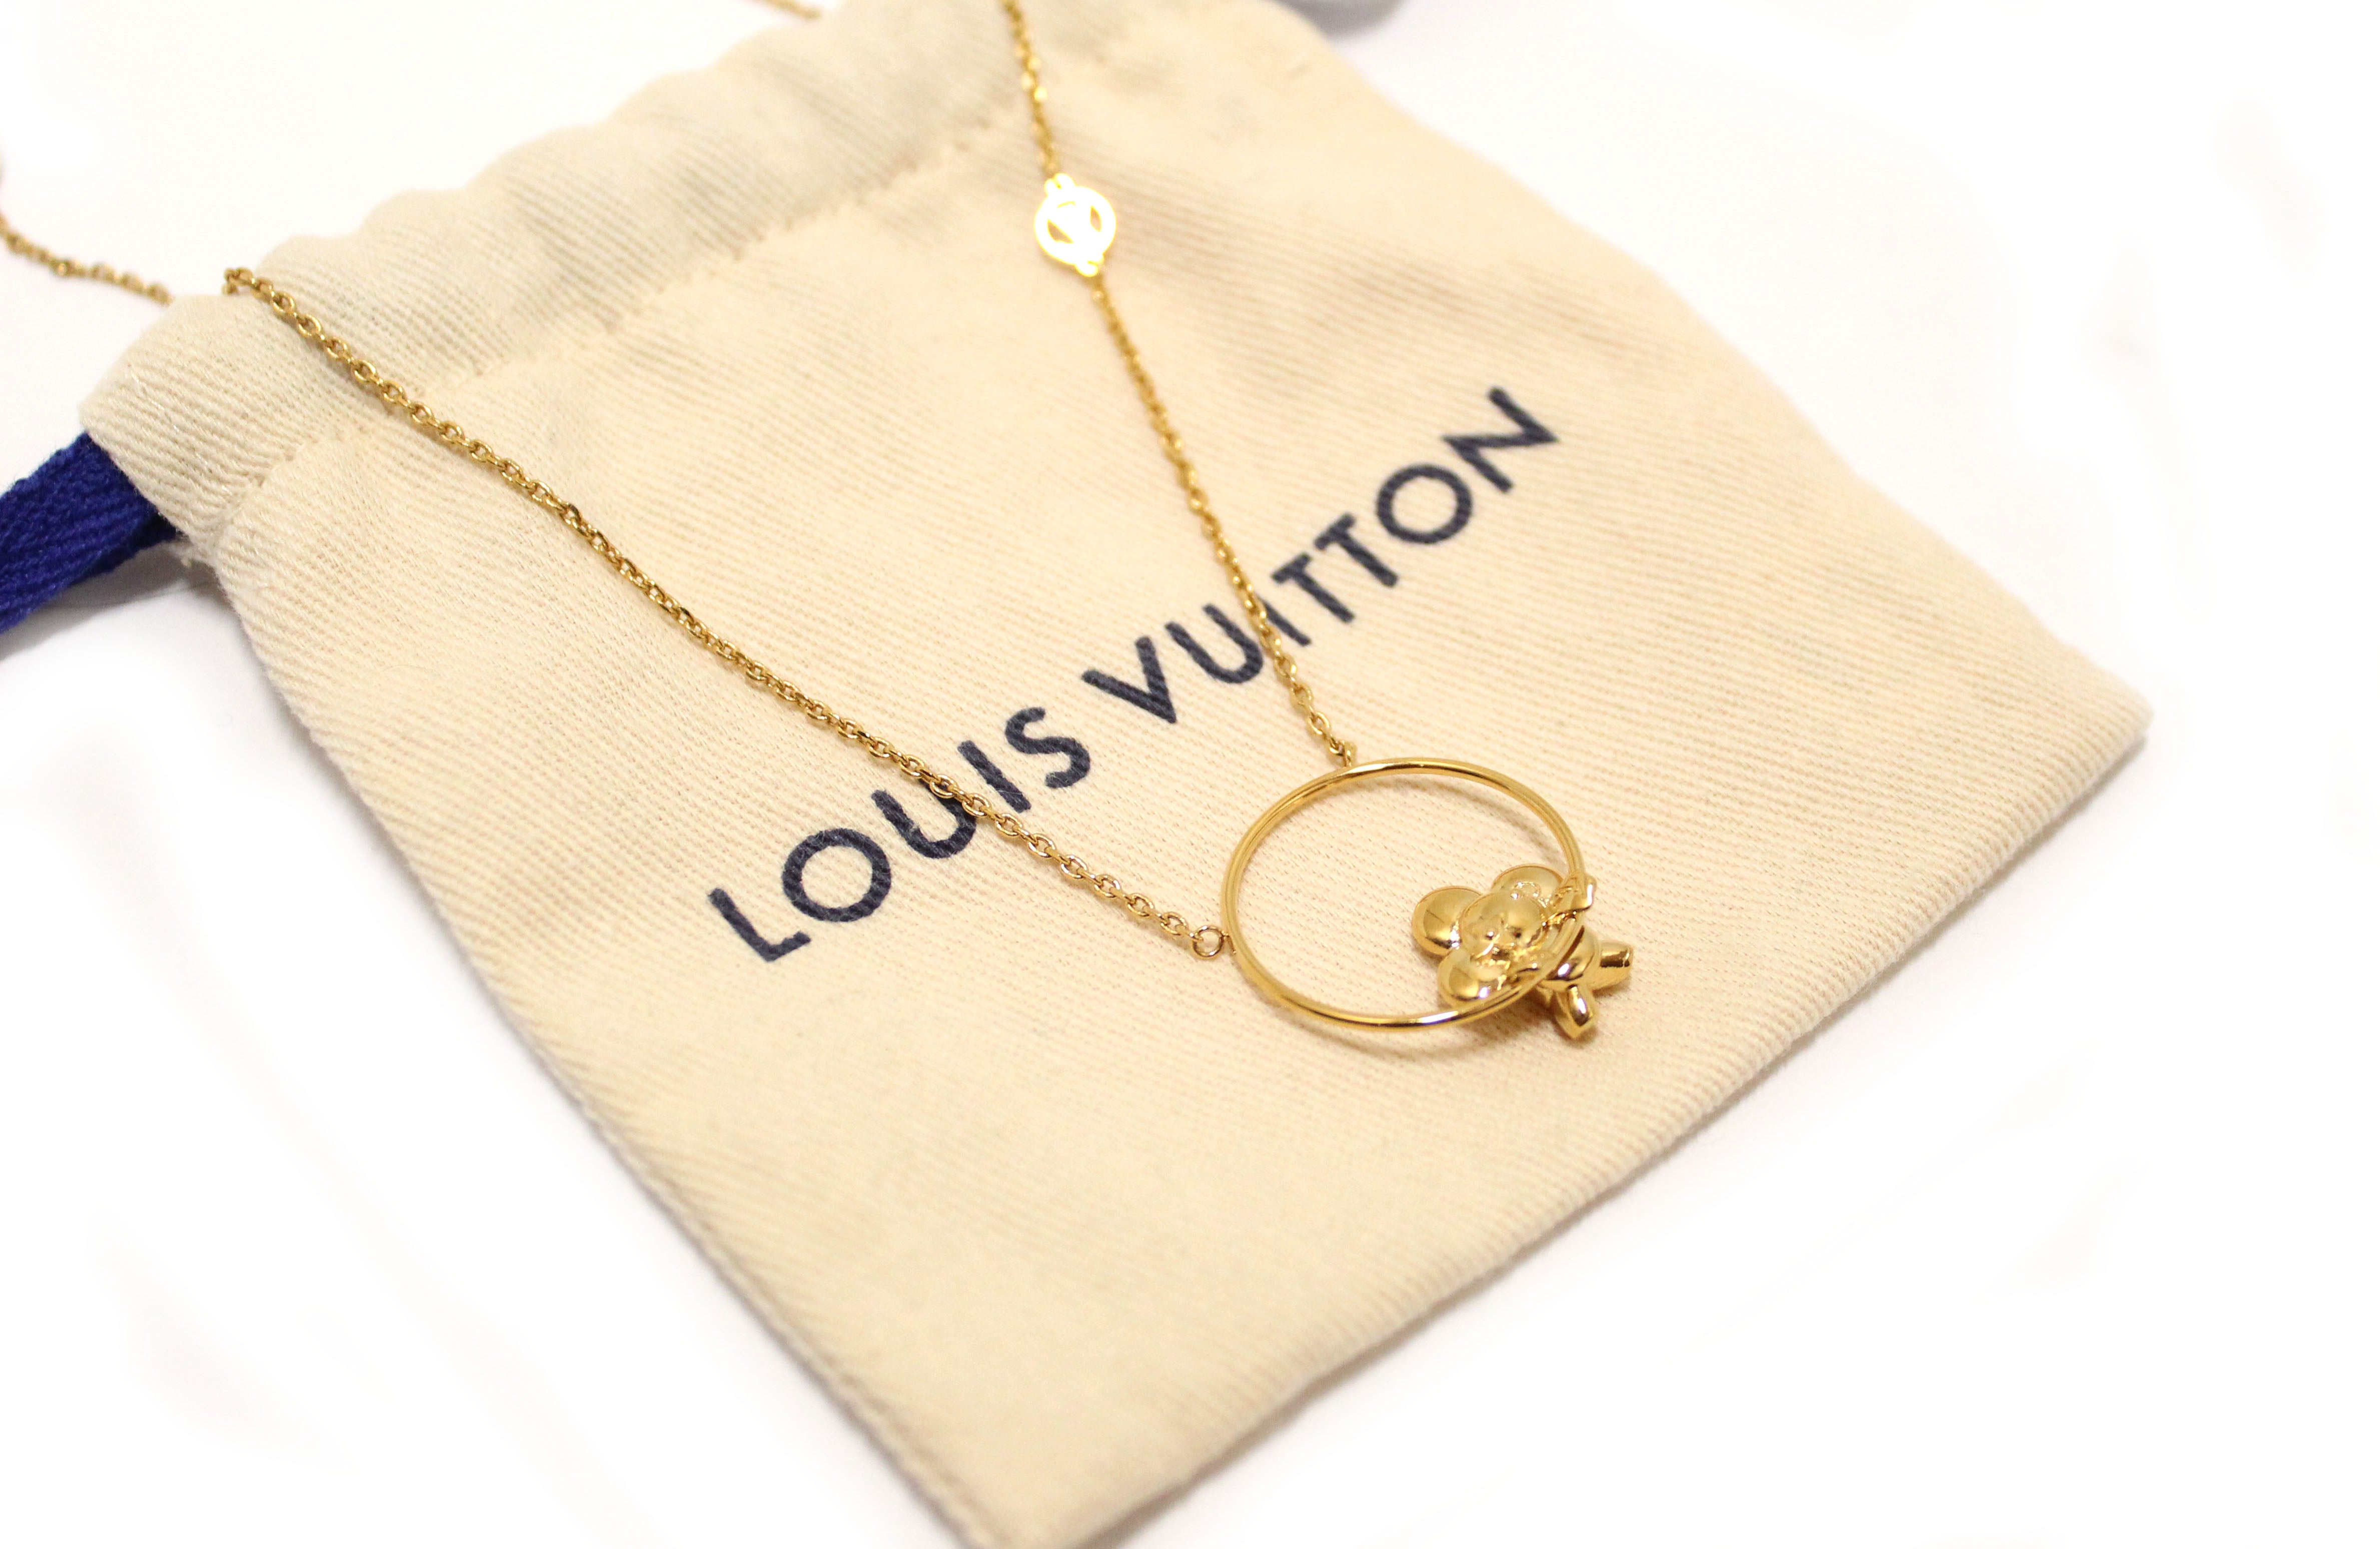 Gold Louis Vuitton necklace